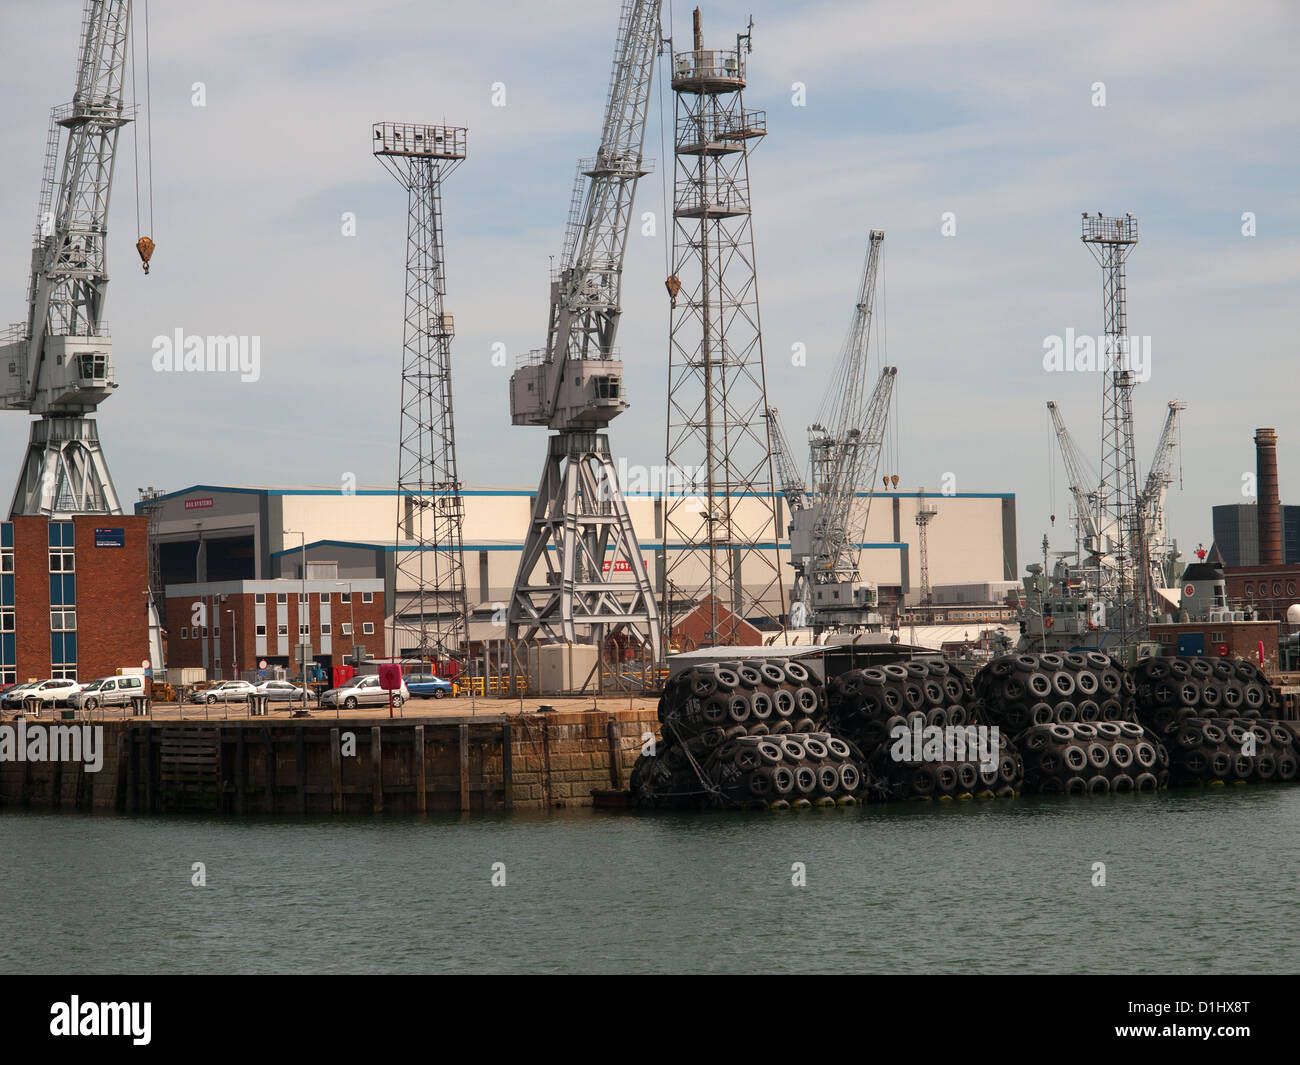 Chantier naval de BAE Systems building Le port de Portsmouth Hampshire England UK Banque D'Images